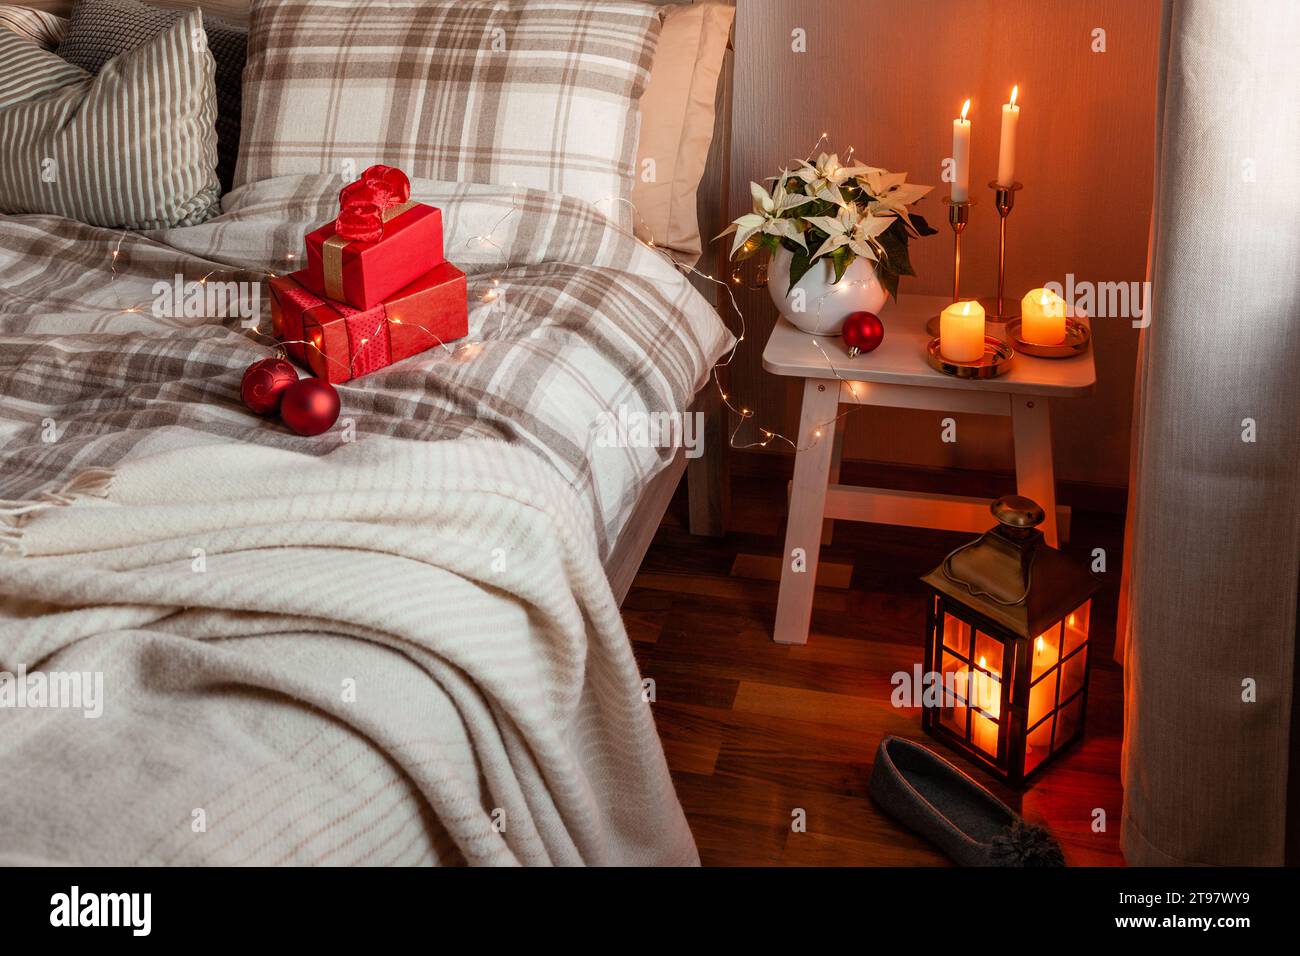 intérieur de chambre scandinave confortable dans des tons naturels, couverture bougies boîte cadeau de noël Banque D'Images